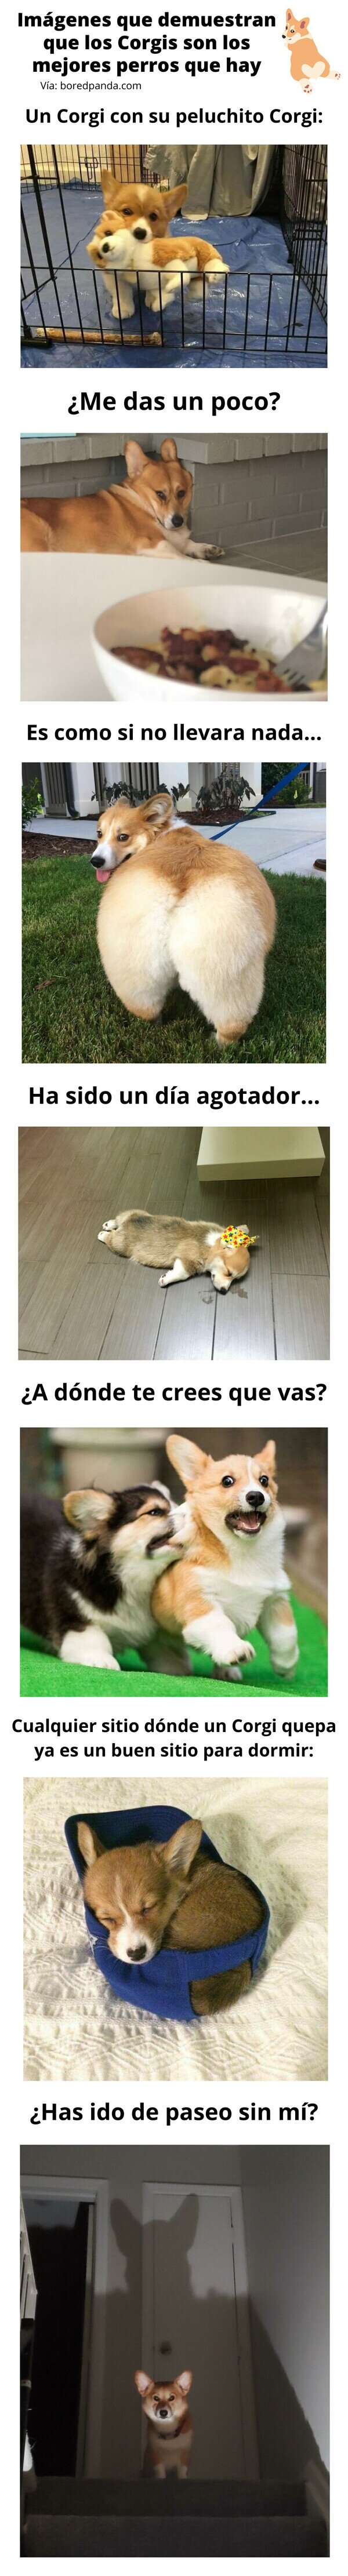 Meme_otros - Imágenes que demuestran que los Corgis son los mejores perros que hay